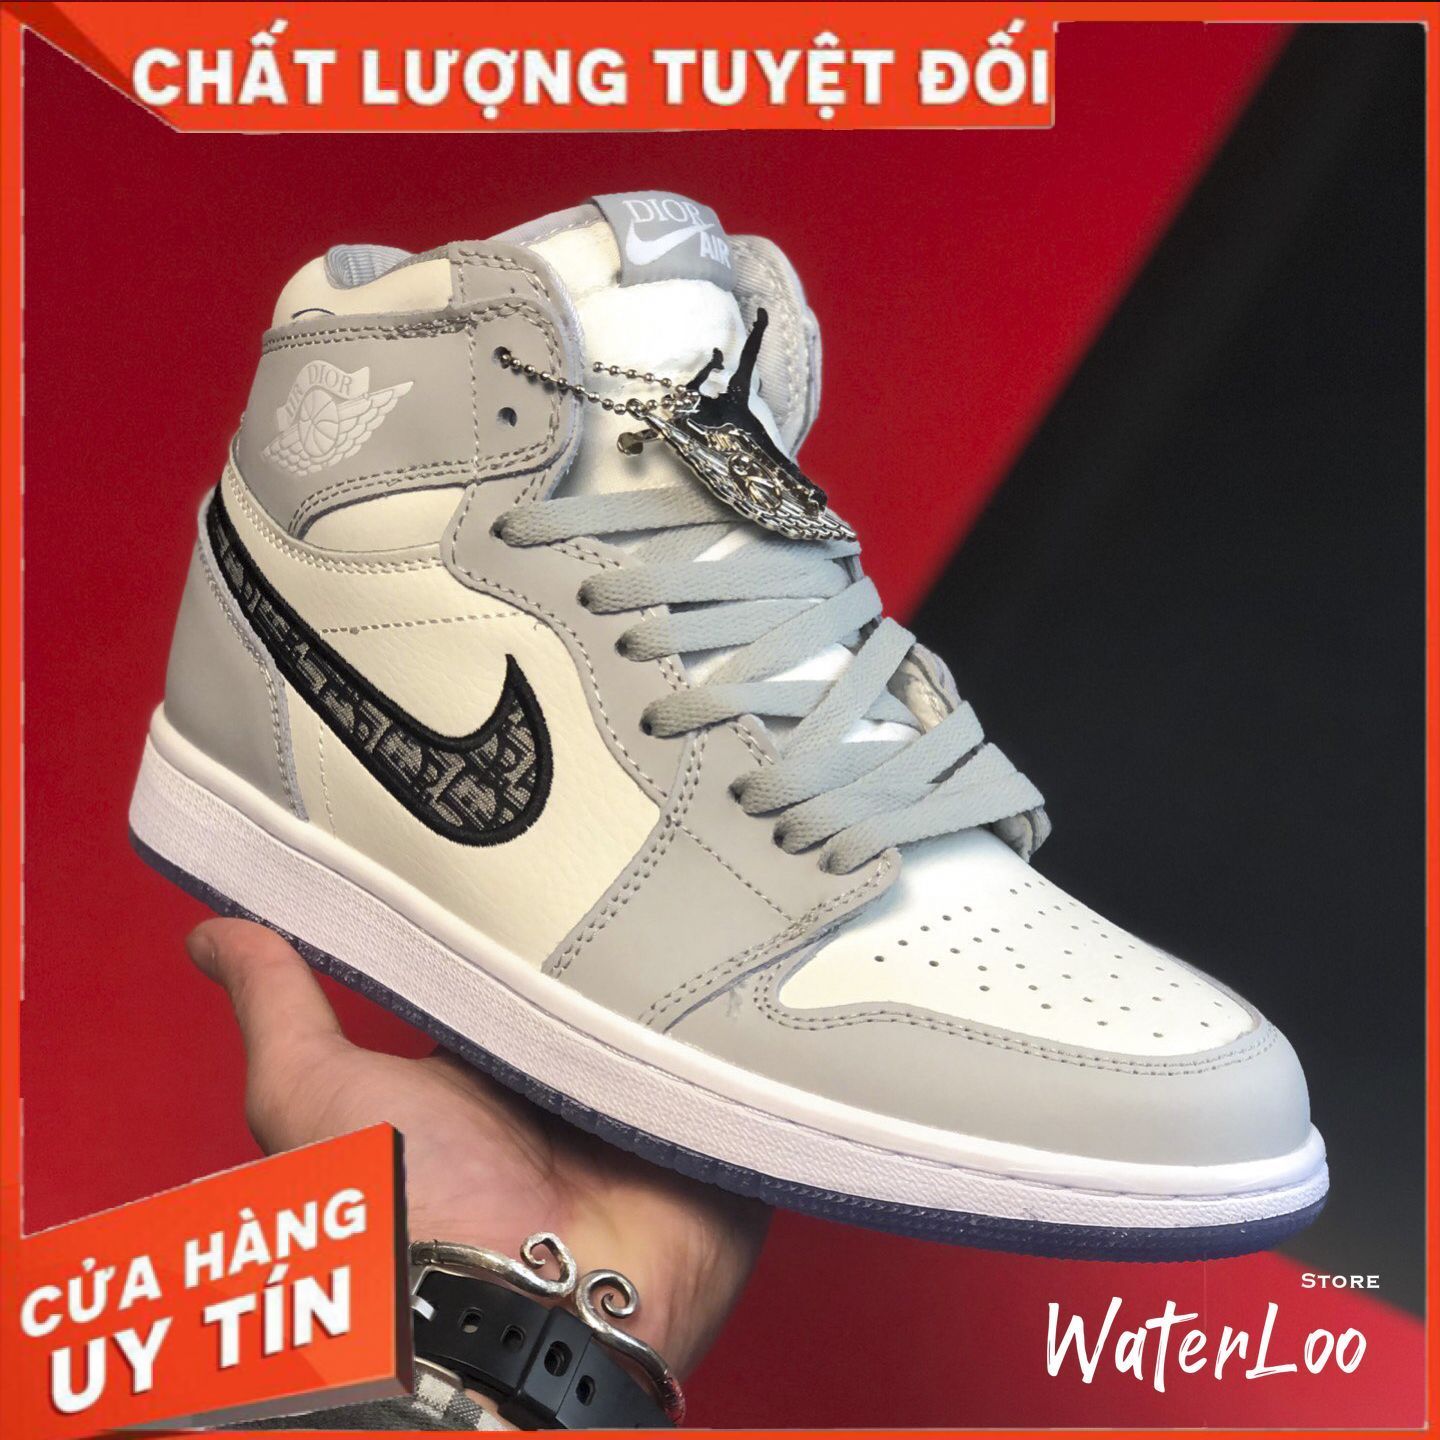 [FREESHIP+HỘP+QUÀ] Giày Thể Thao Sneakers AIR JORDAN 1 Retro High cao cổ xám trắng